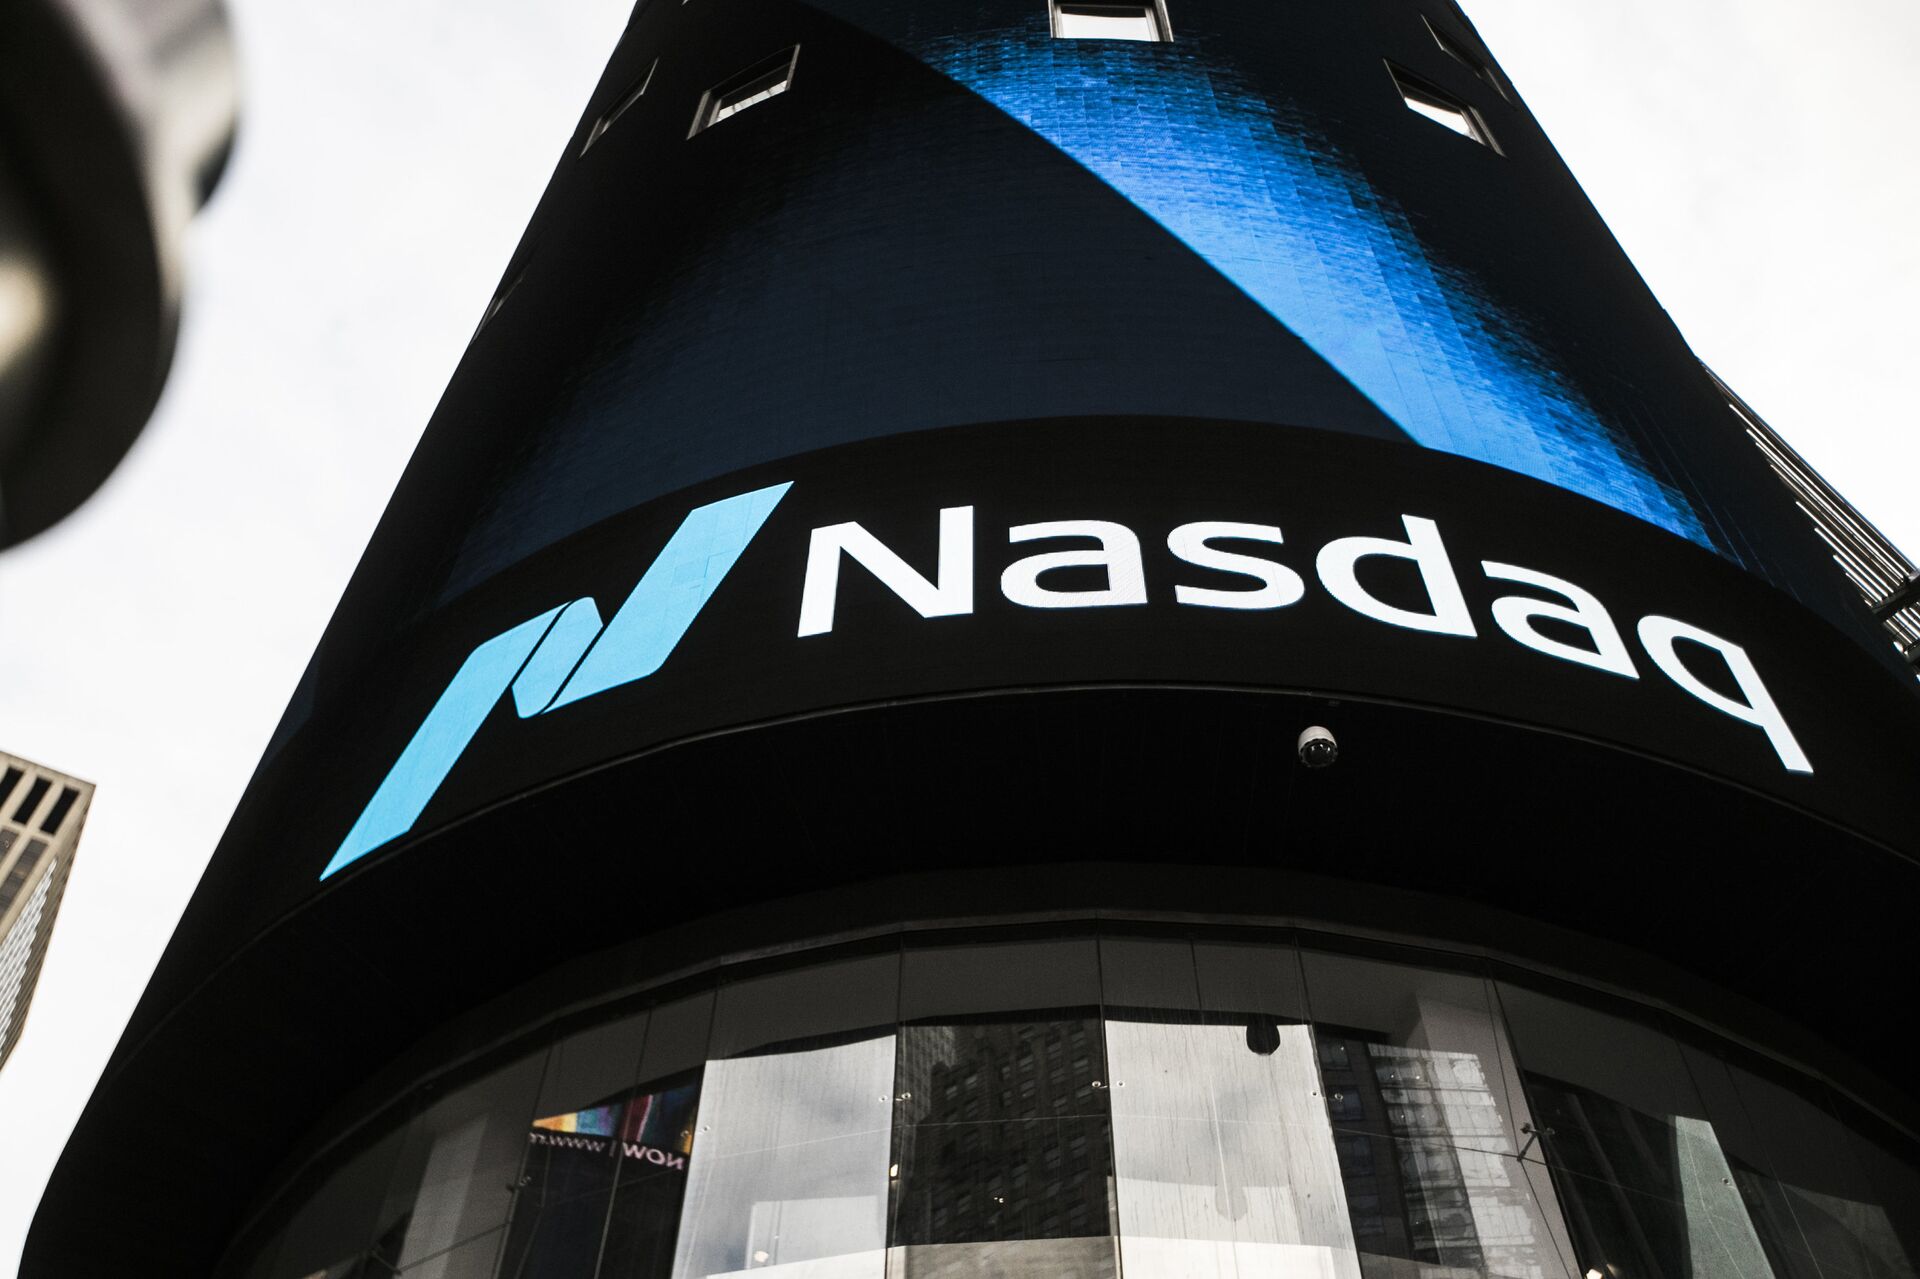 Информационная панель биржи NASDAQ на первых этажах небоскрёба Конде-Наст-билдинг на Таймс-сквер в Нью-Йорке - РИА Новости, 1920, 19.11.2020